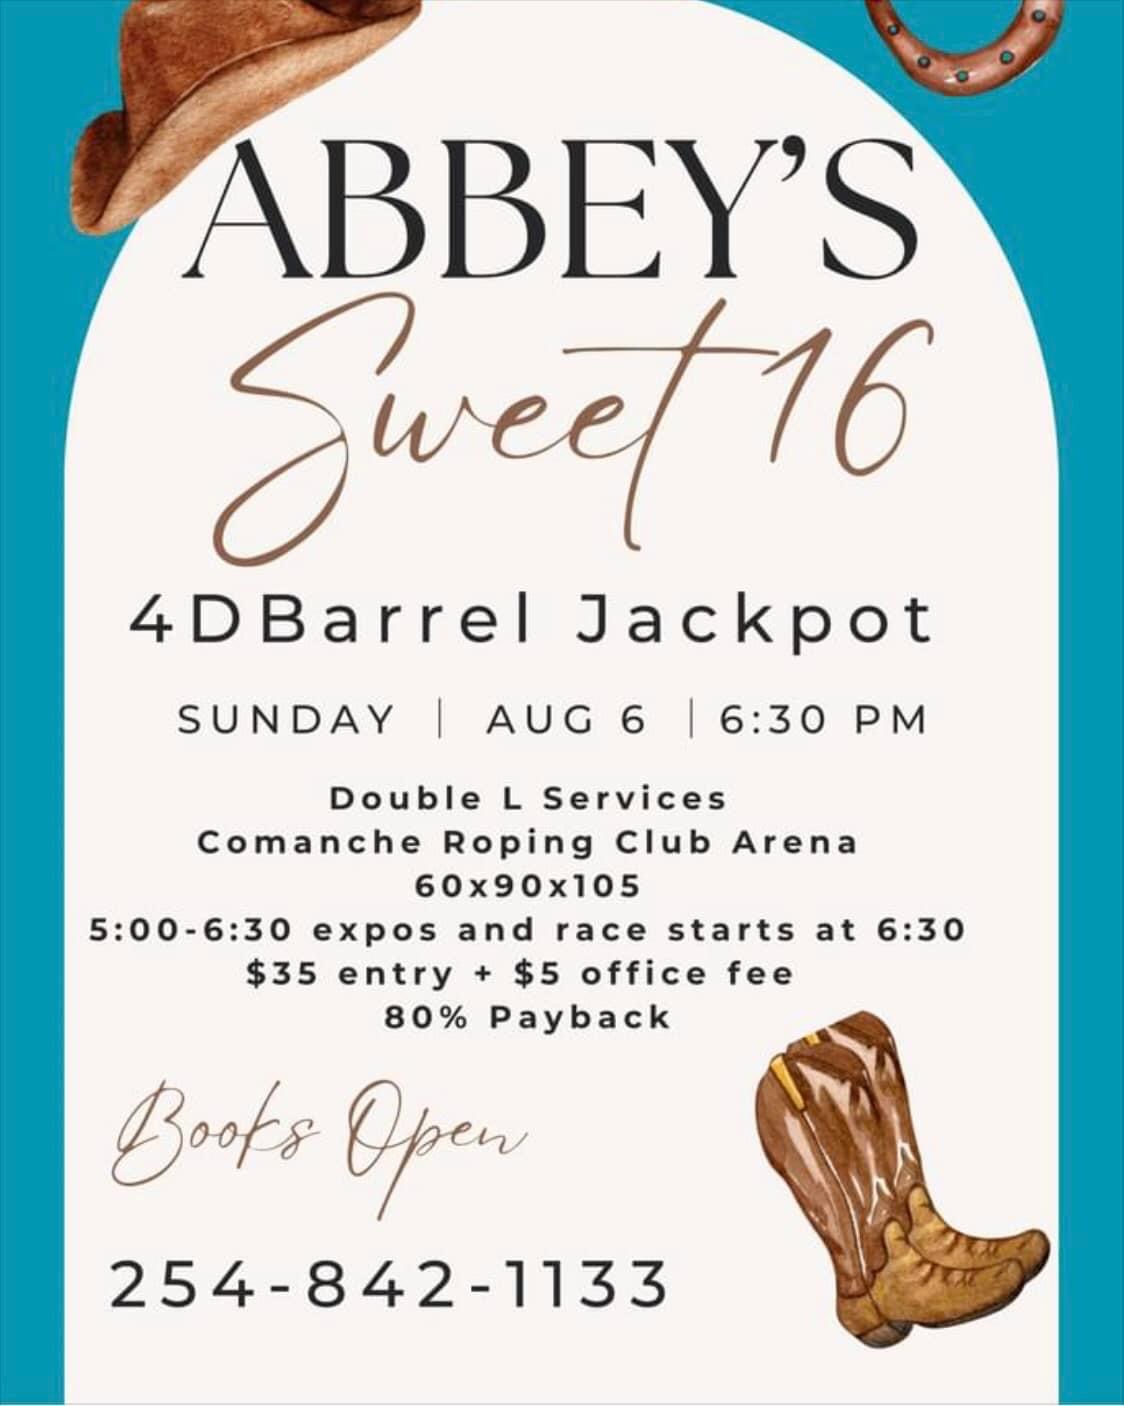 Abbey's Sweet 16 Jackpot